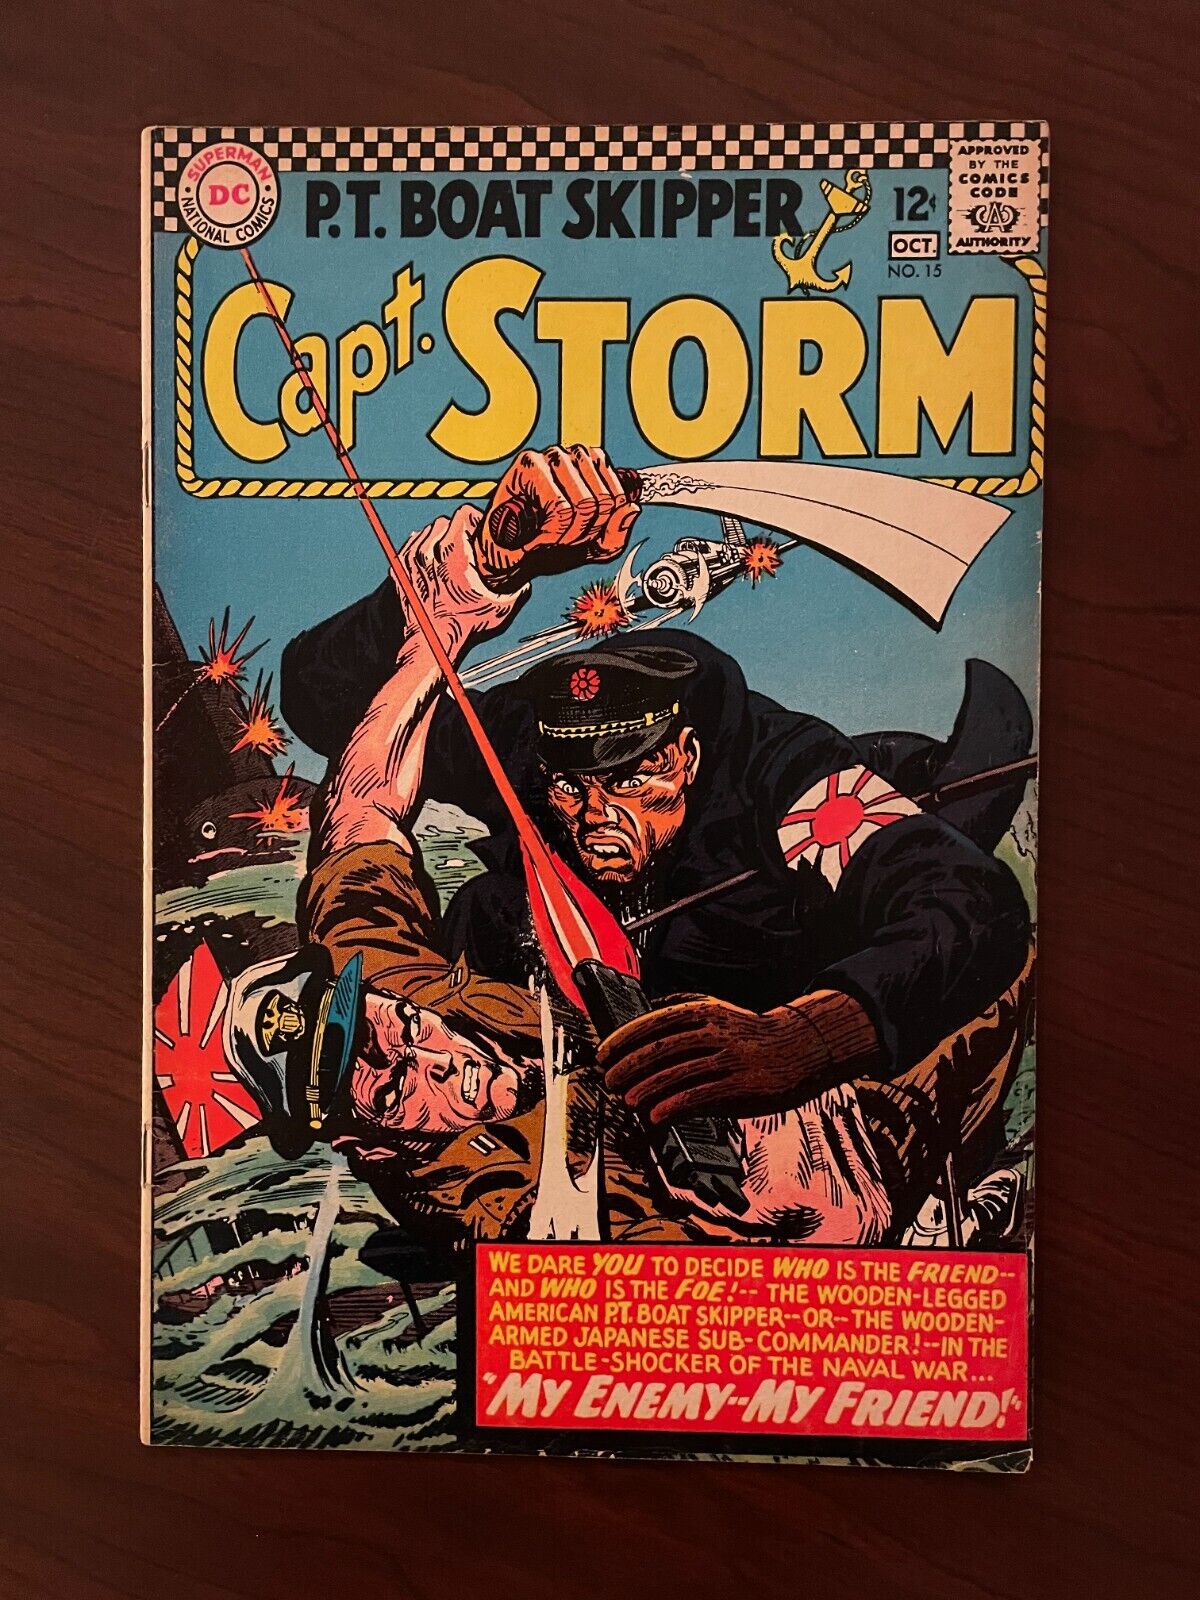 Capt. Storm #15 (DC 1966) P.T. Boat Skipper Silver Age War Jack Abel 6.0 FN